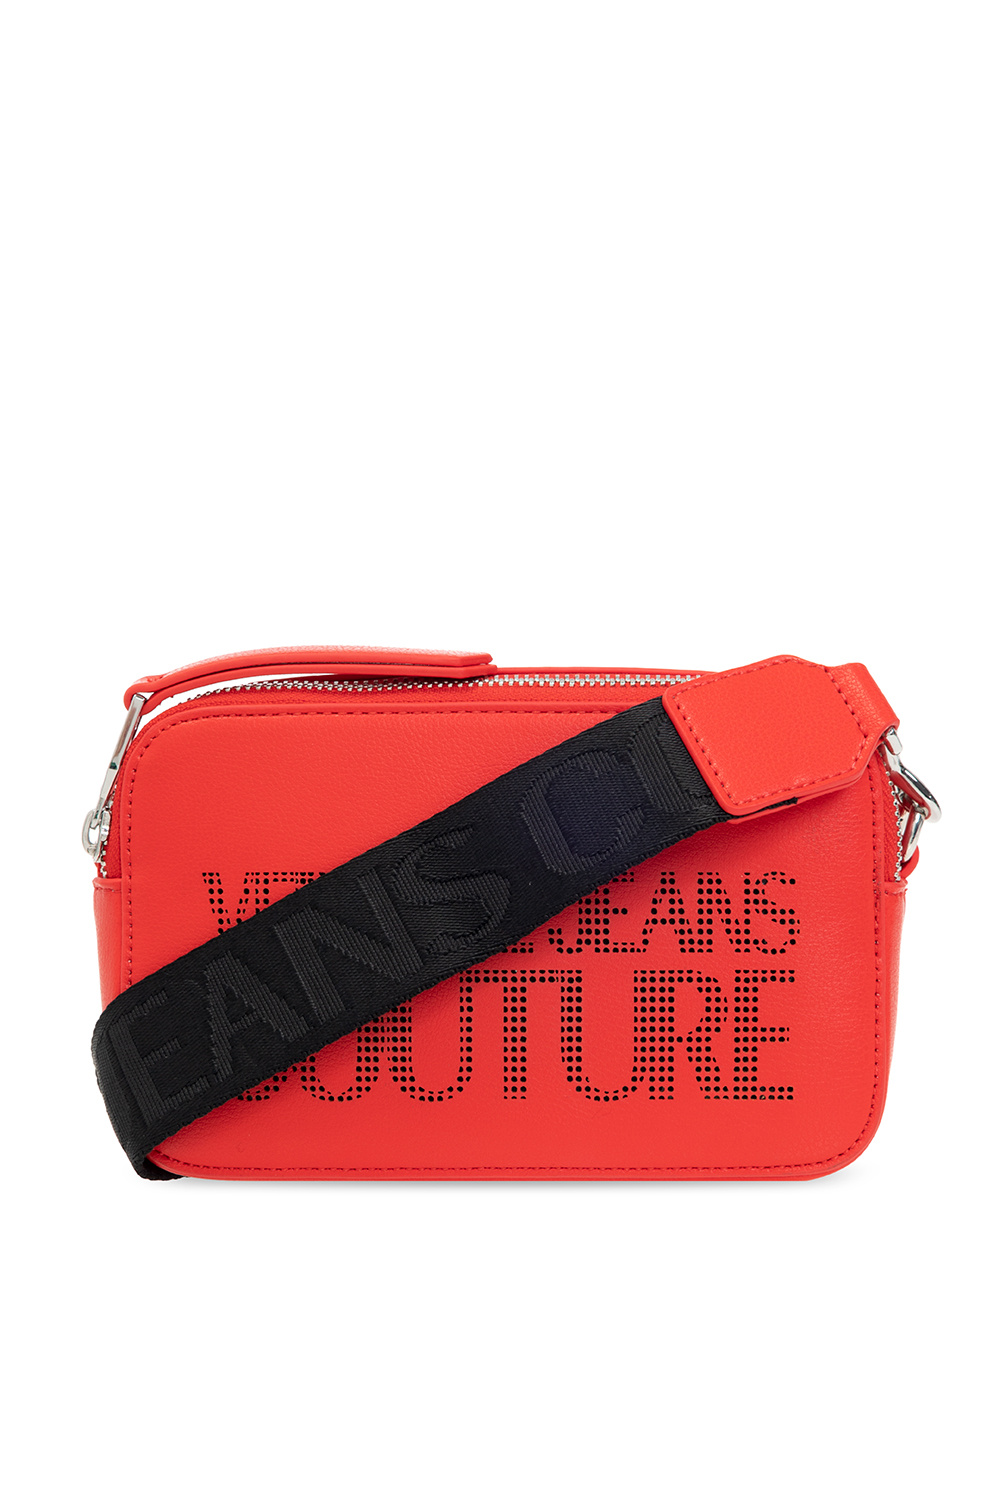 Versace Jeans Women's Shoulder Bag - Red - Shoulder Bags